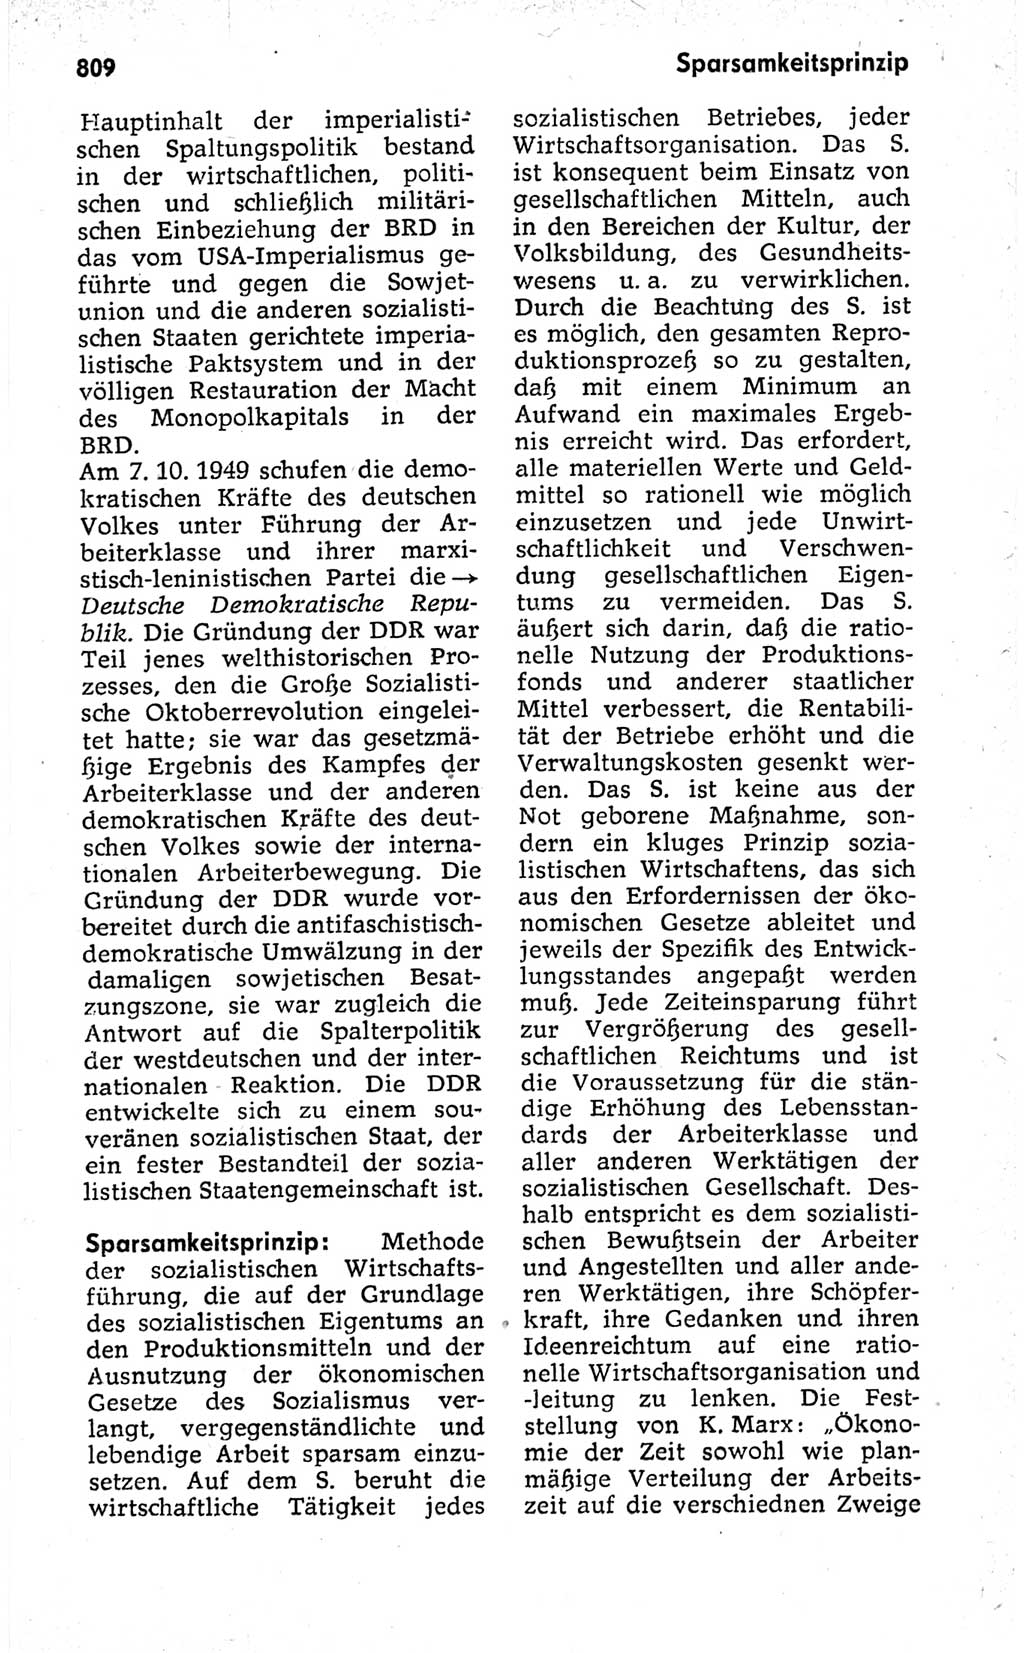 Kleines politisches Wörterbuch [Deutsche Demokratische Republik (DDR)] 1973, Seite 809 (Kl. pol. Wb. DDR 1973, S. 809)